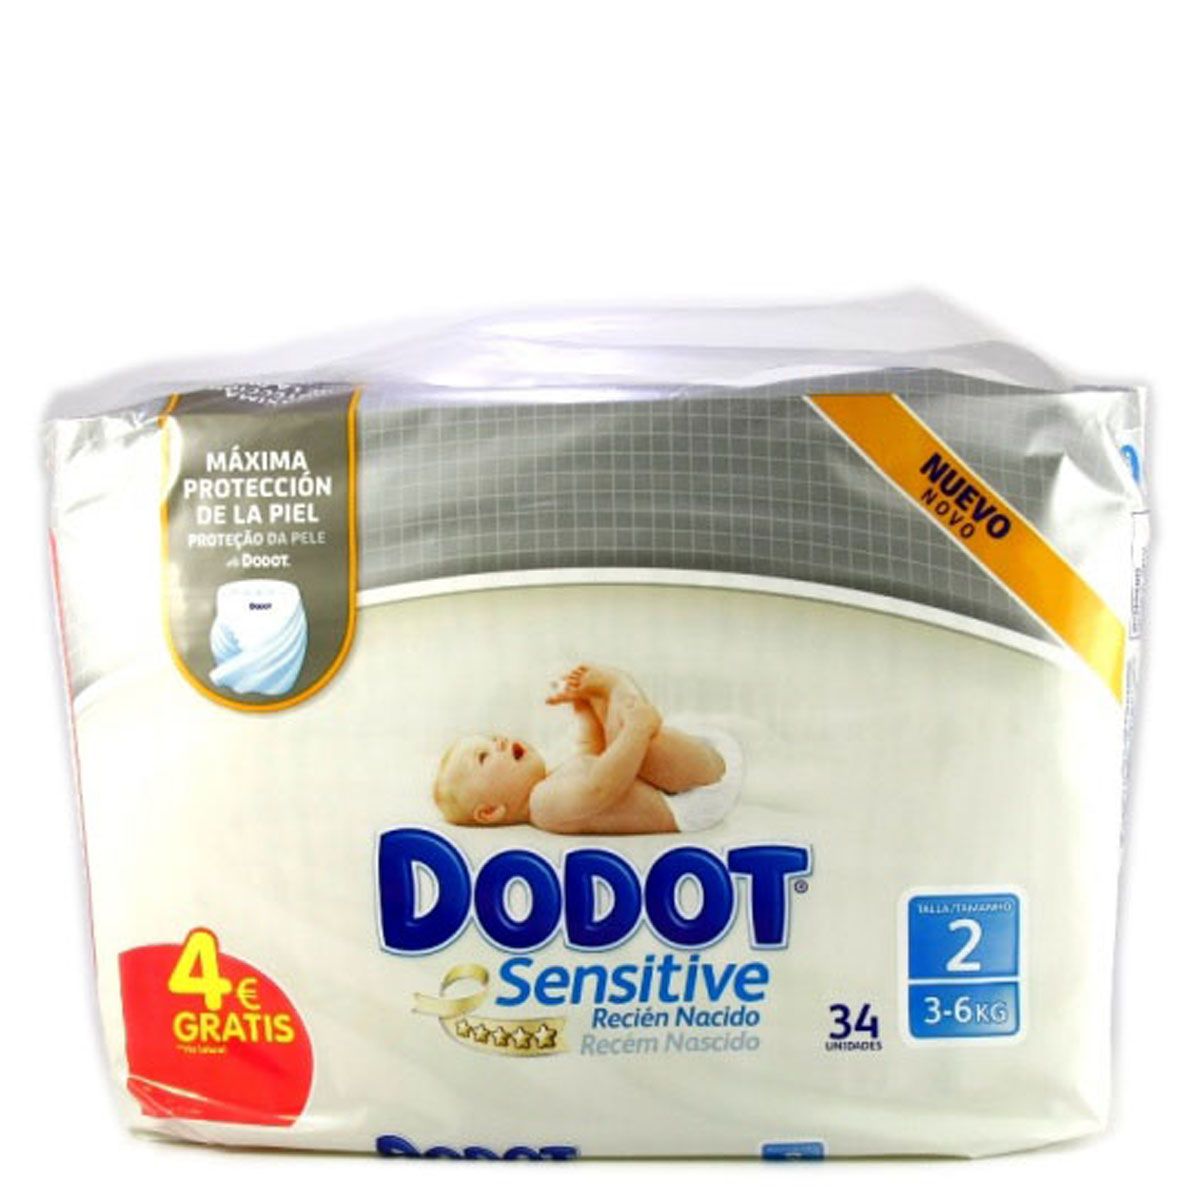 Dodot Sensitive kit recién nacido con pañales talla 1 paquete 28 unidades + pañales  talla 2 + caja dispensadora toallitas 54 unidades 2 paquetes 32 unidades